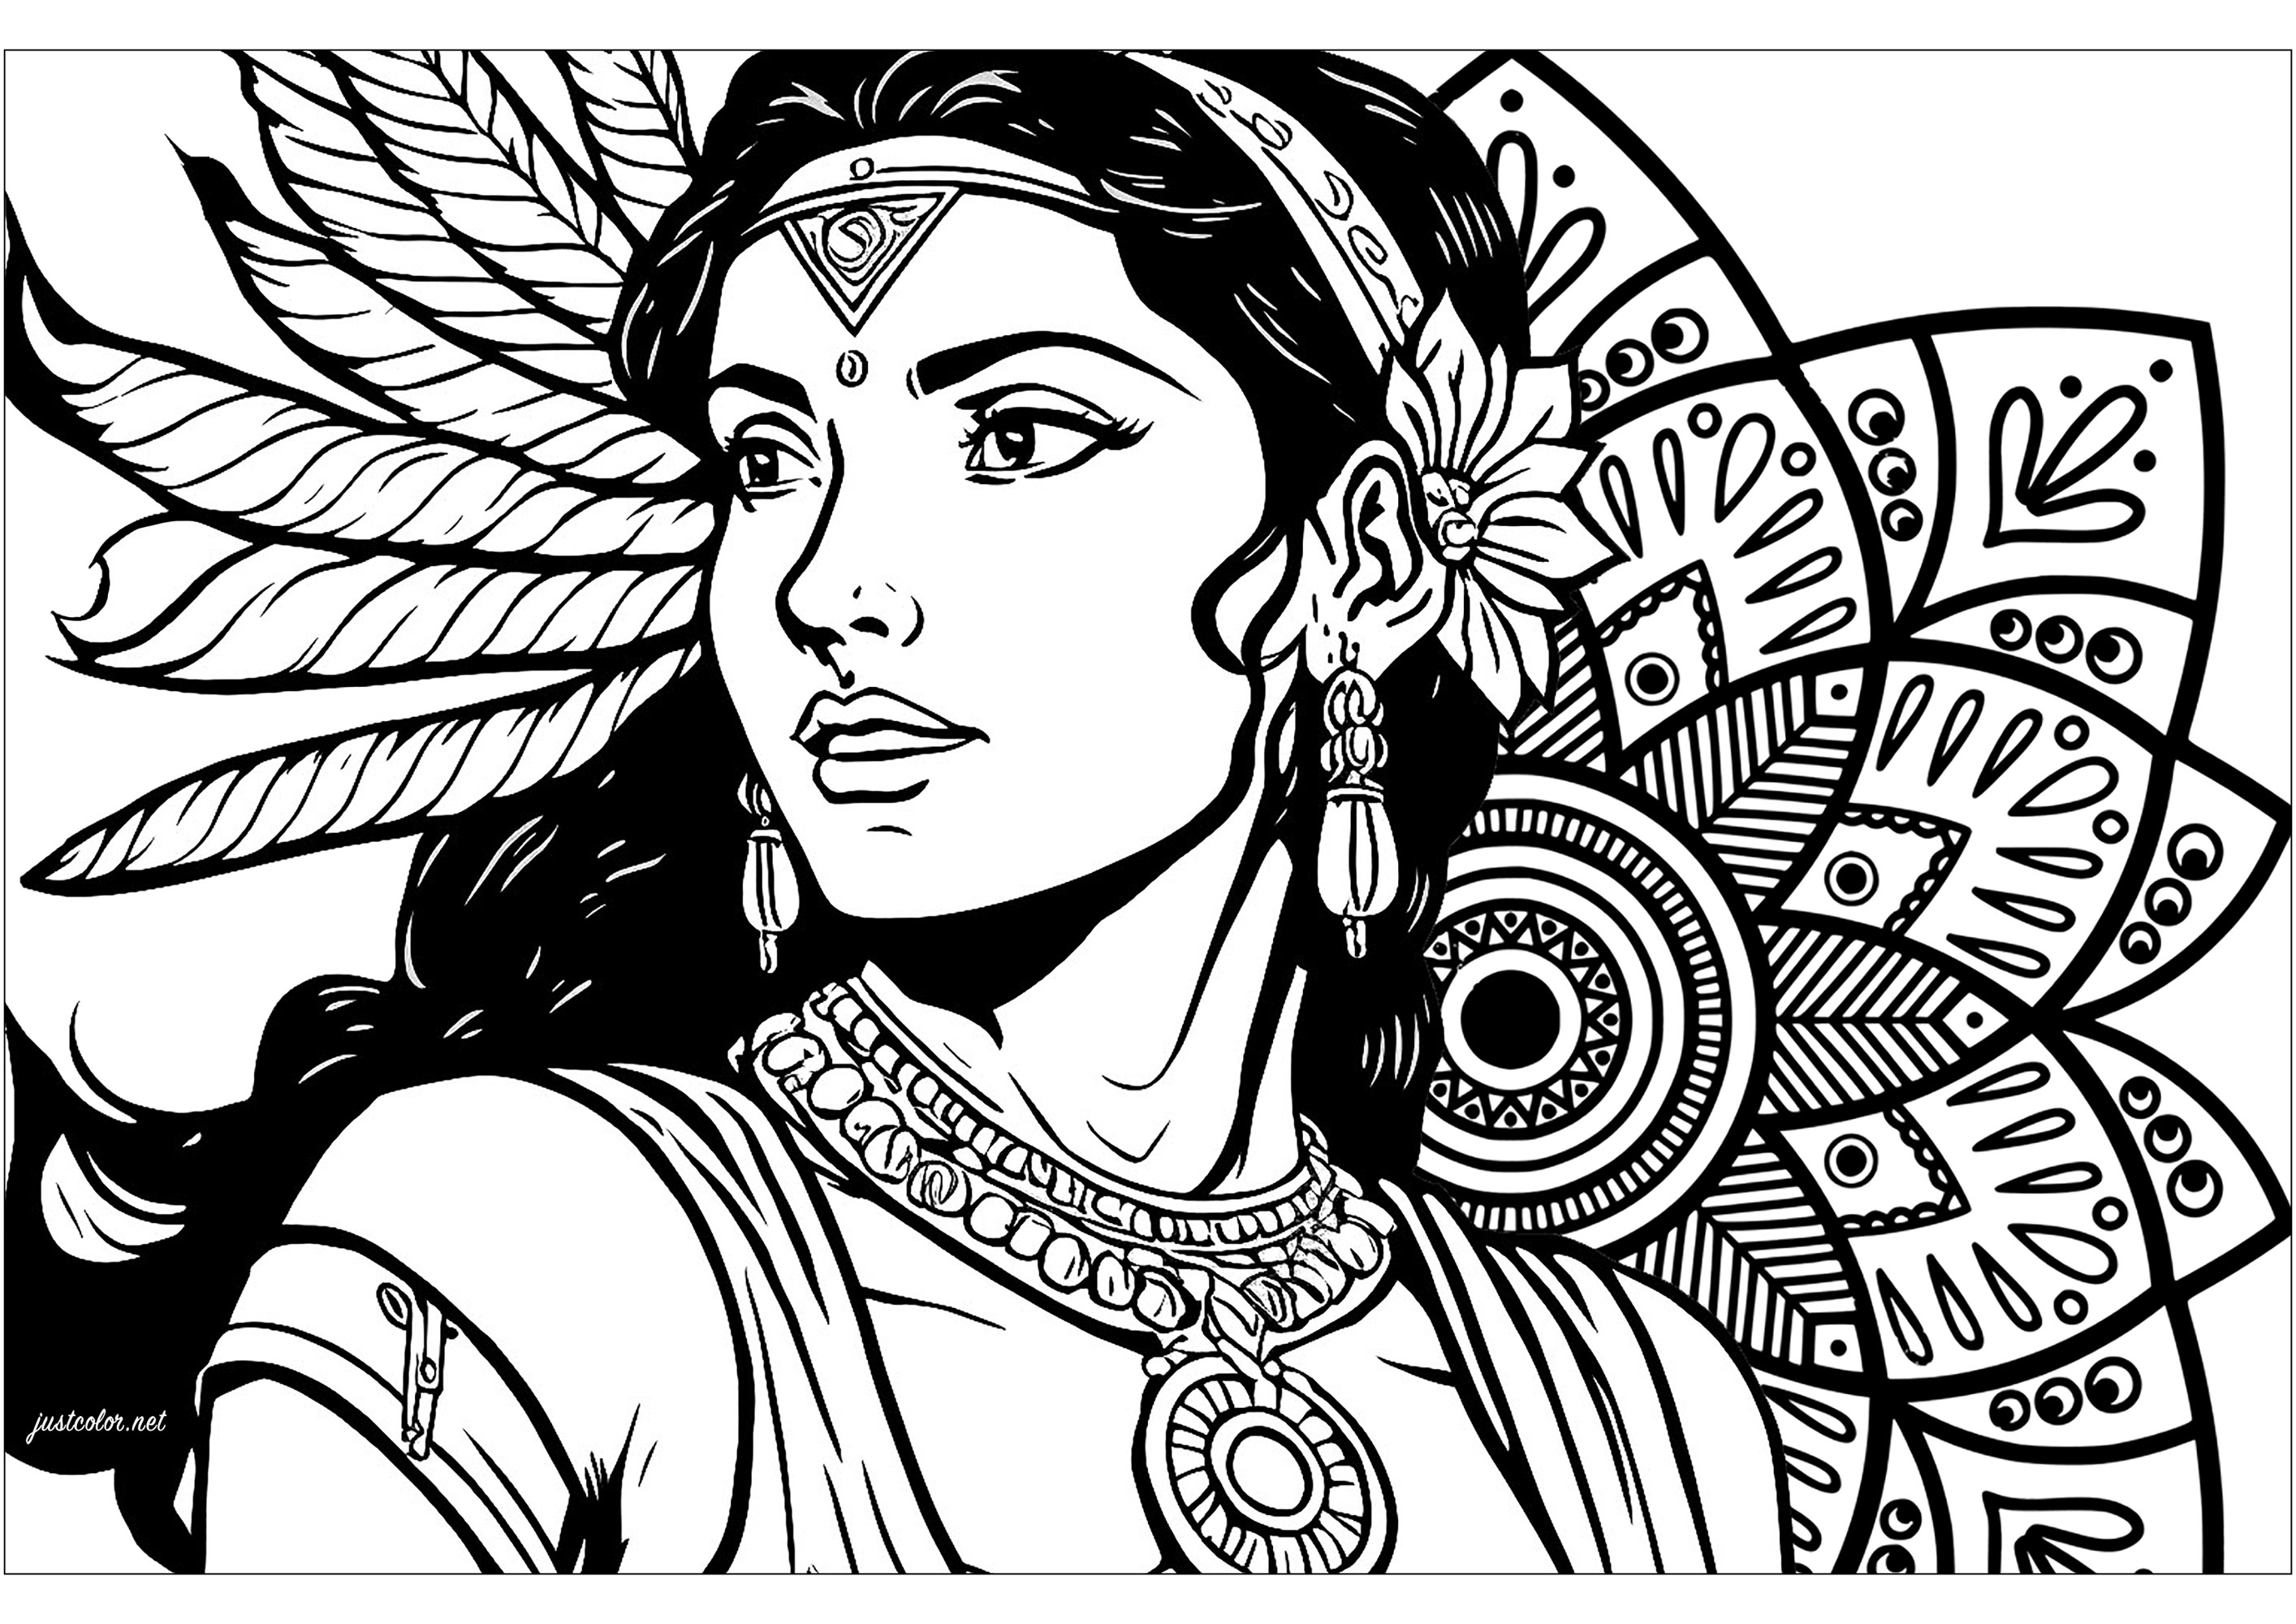 Wunderschönes Kolorit einer indischen Frau und ein von indischen Mustern inspiriertes Mandala. Diese Zeichnung der Indianerin mit ihrem durchdringenden Blick erinnert uns an die innere Kraft, die in uns schlummert, während das von den Mustern der Indianer inspirierte Mandala die universelle Harmonie symbolisiert und zum inneren Frieden einlädt.